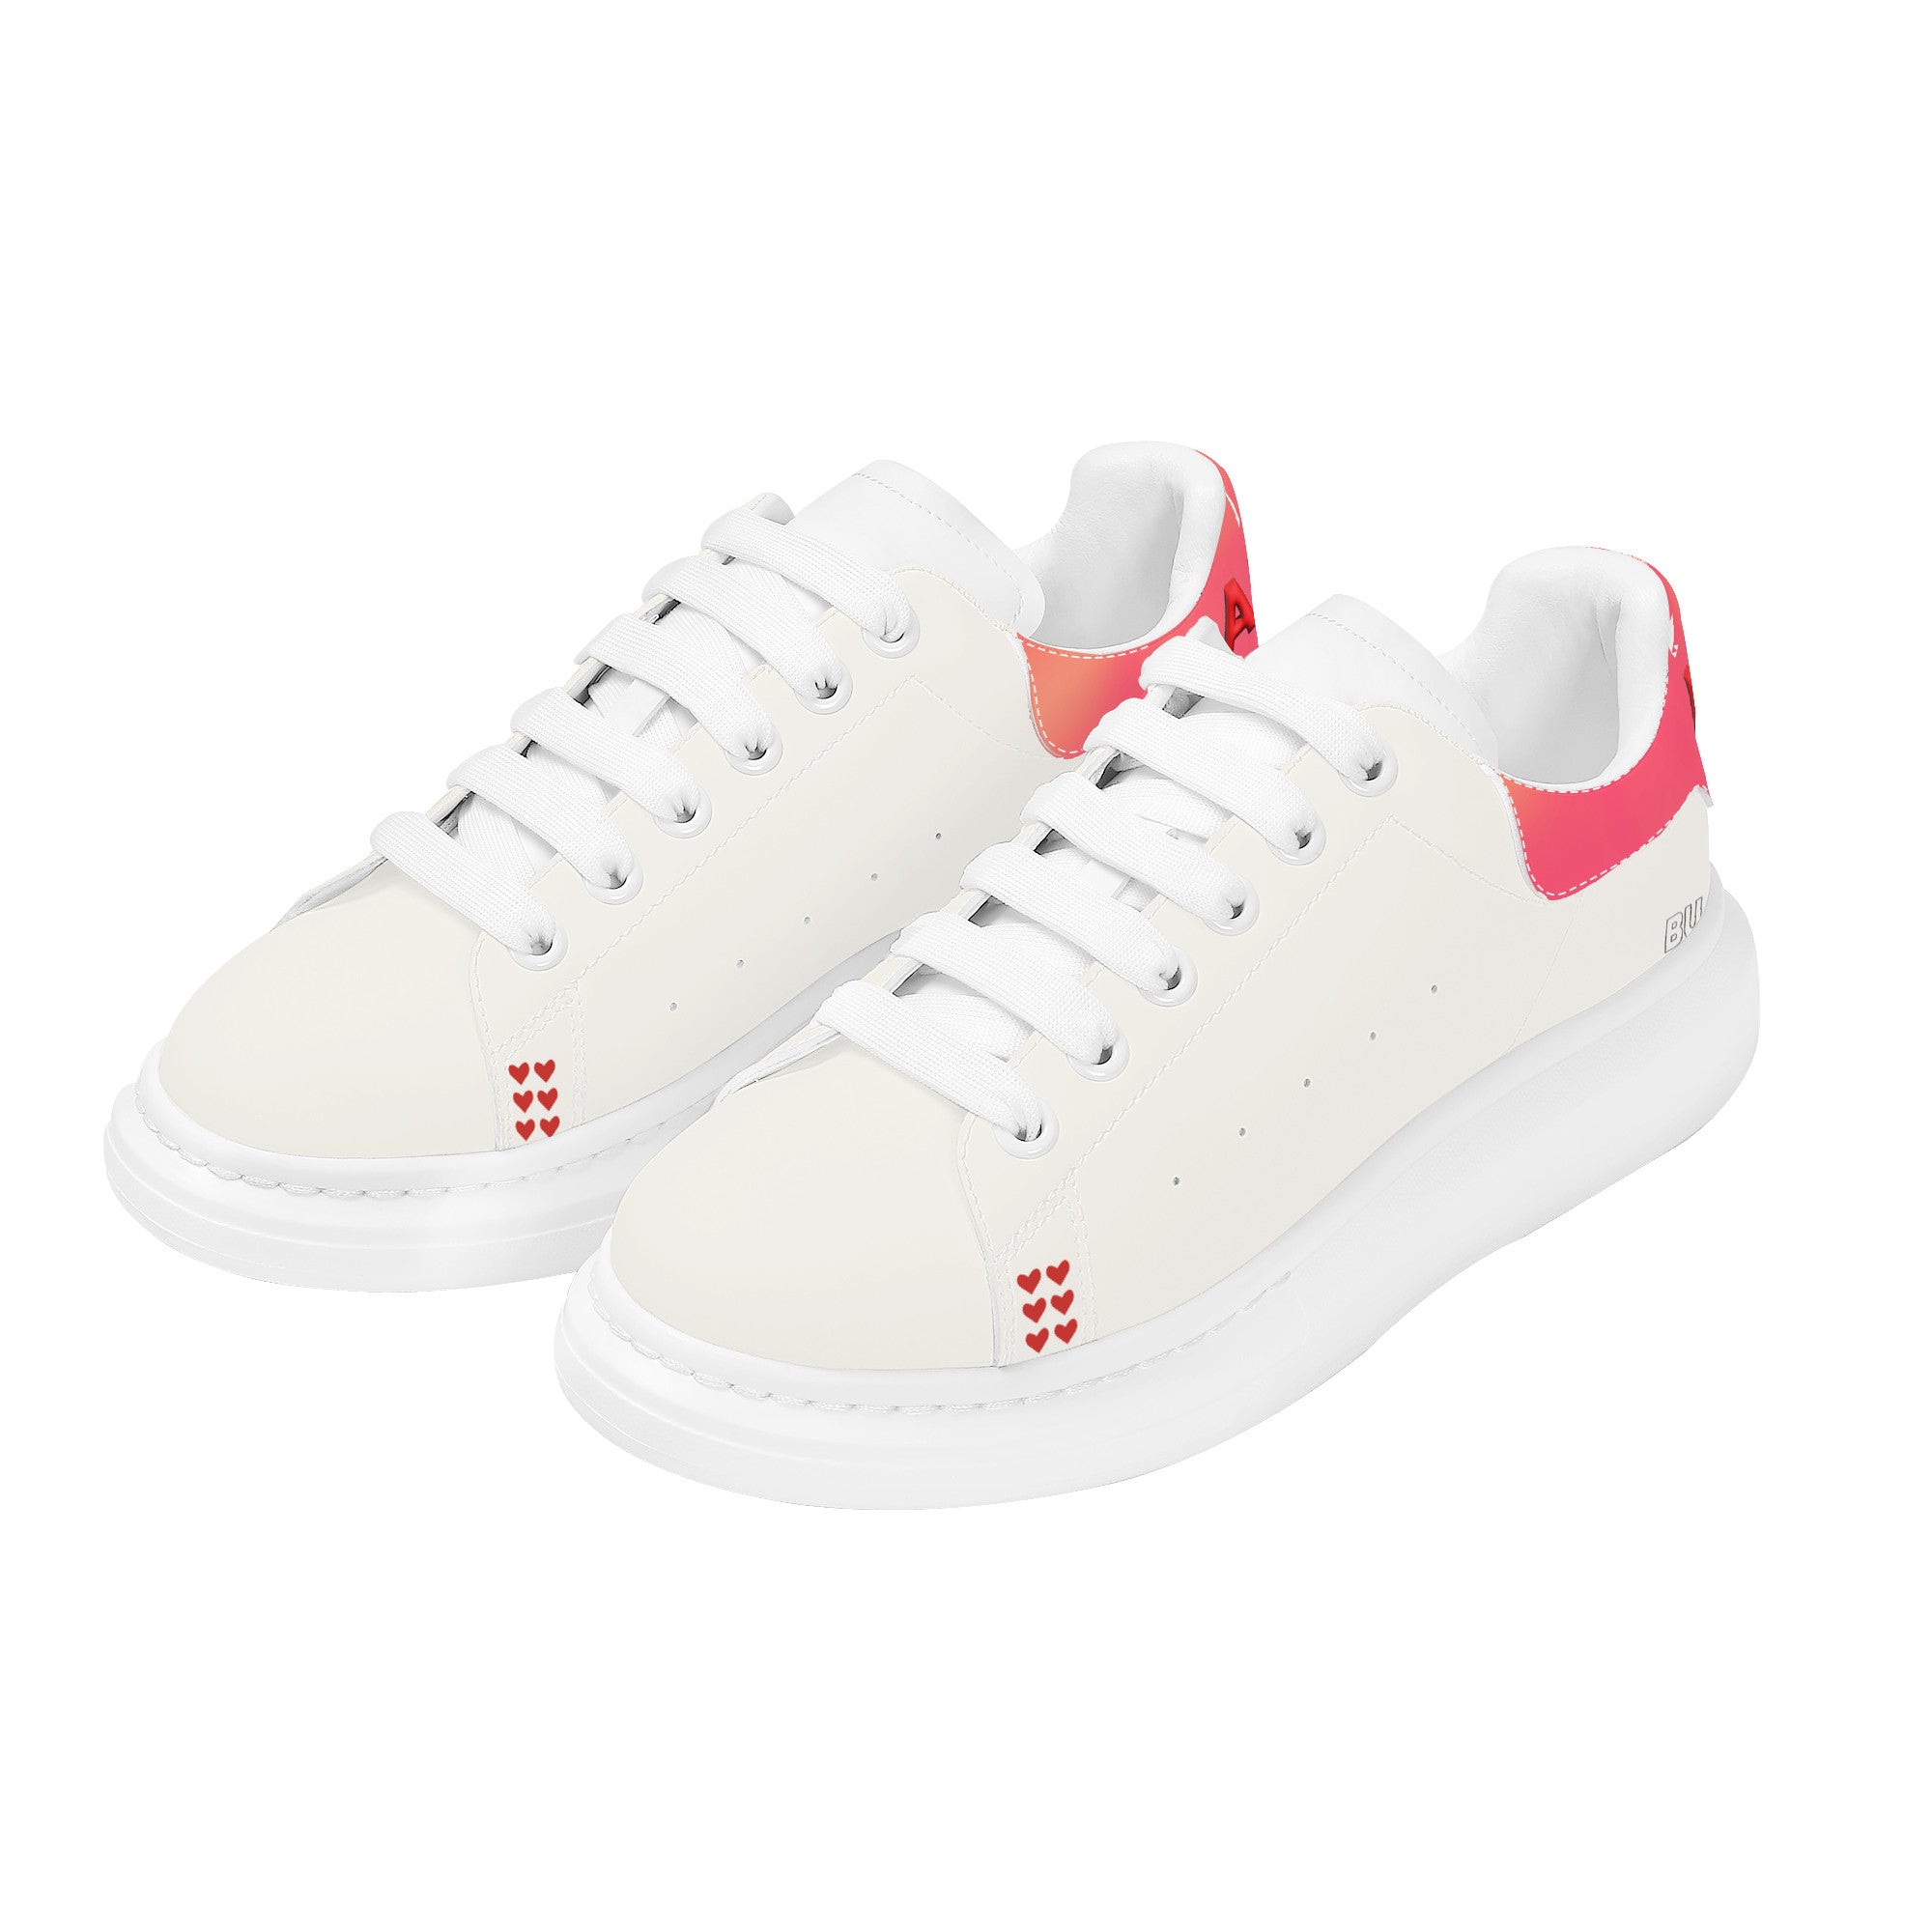 Nia C Customized Heighten Low Top Shoes - White - Shoe Zero